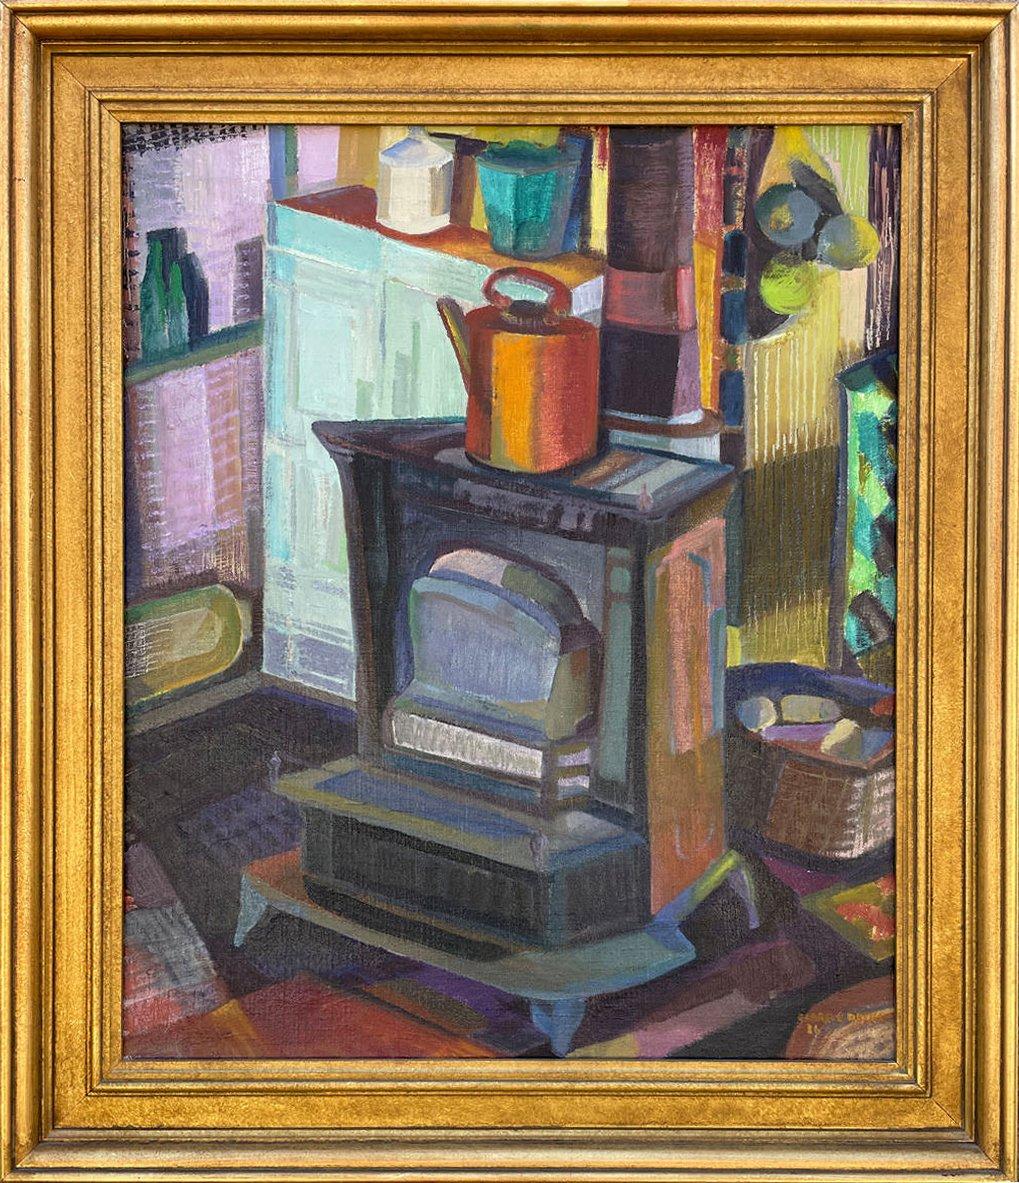 Studio Stove, peinture à l'huile cubiste colorée représentant une artiste féminine de l'école de Cleveland